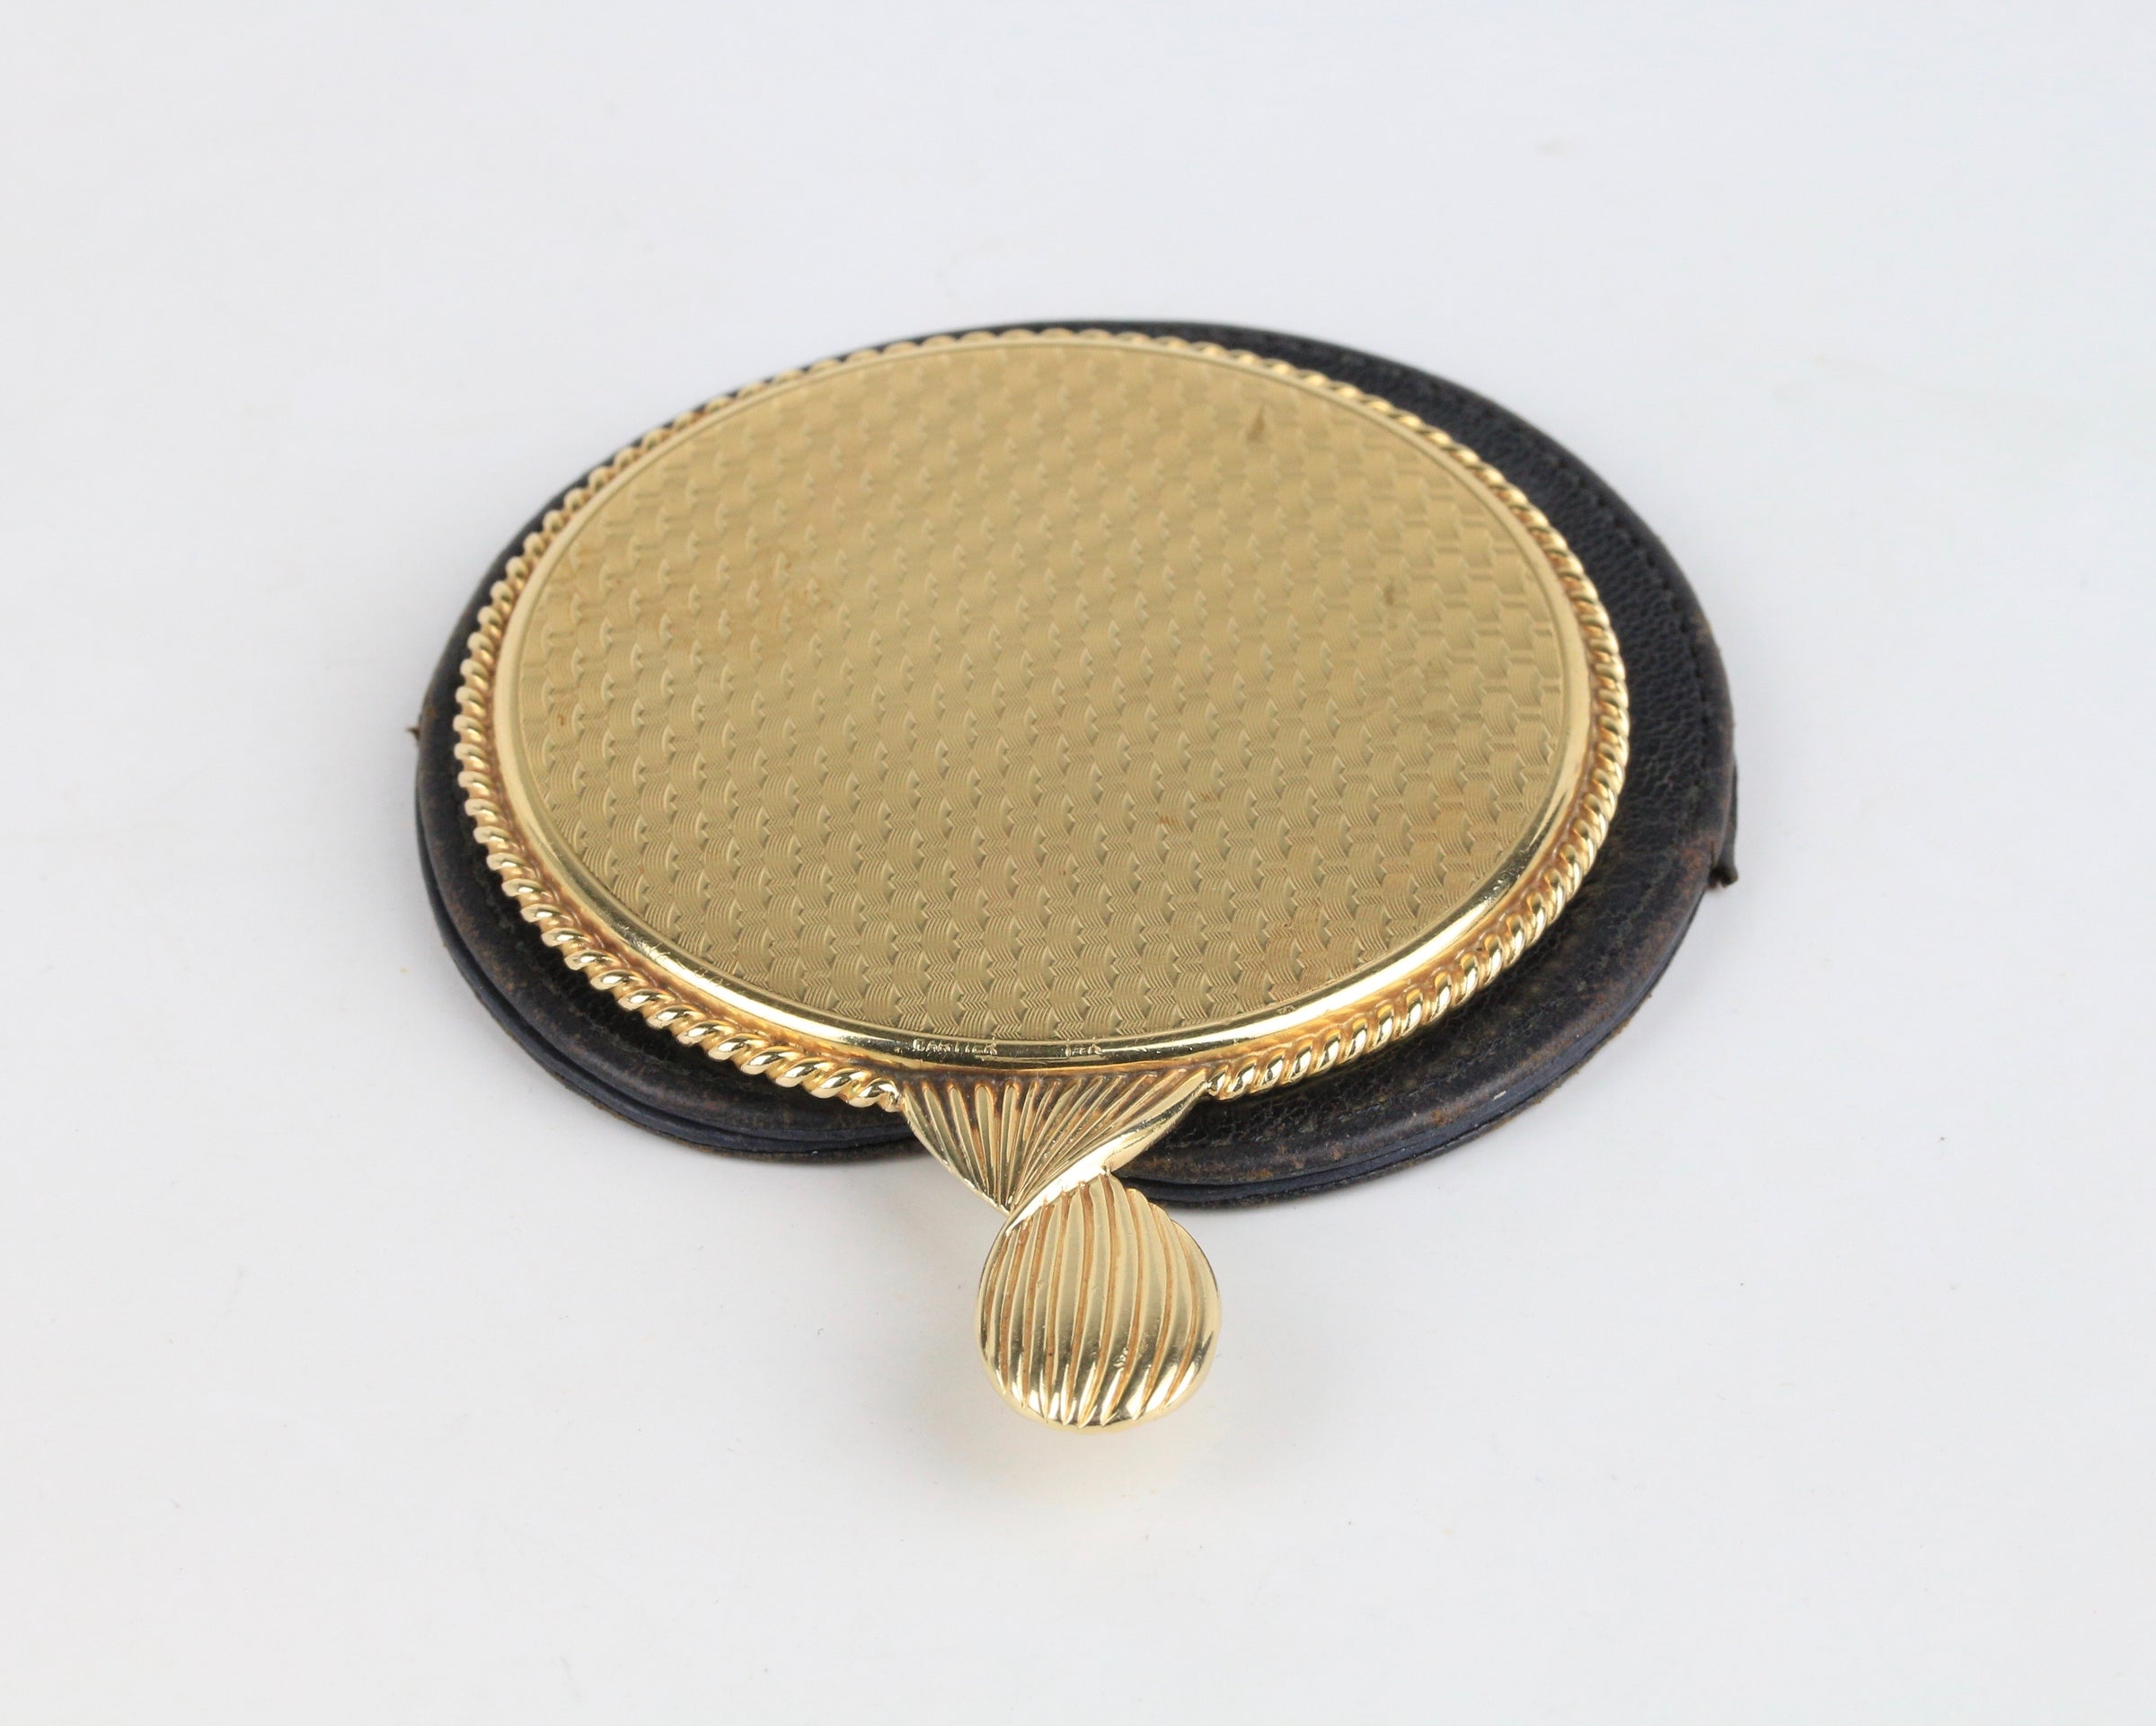 Vintage Hand Mirror 14K Gold Charm